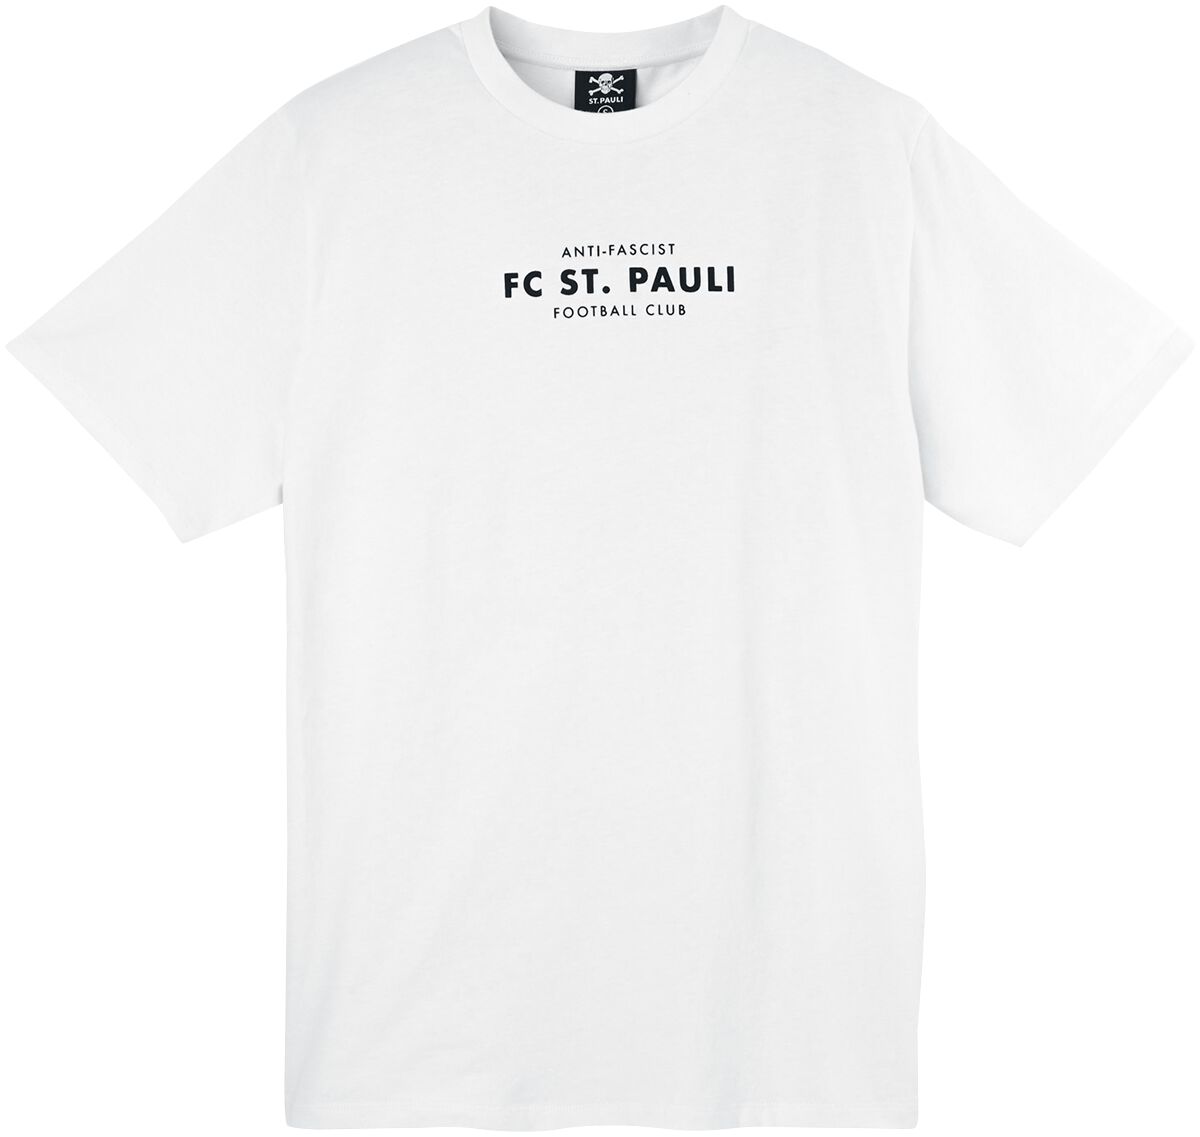 T-Shirt Manches courtes de FC St. Pauli - Anit-Facist Totenkopf - S à 3XL - pour Unisexe - blanc